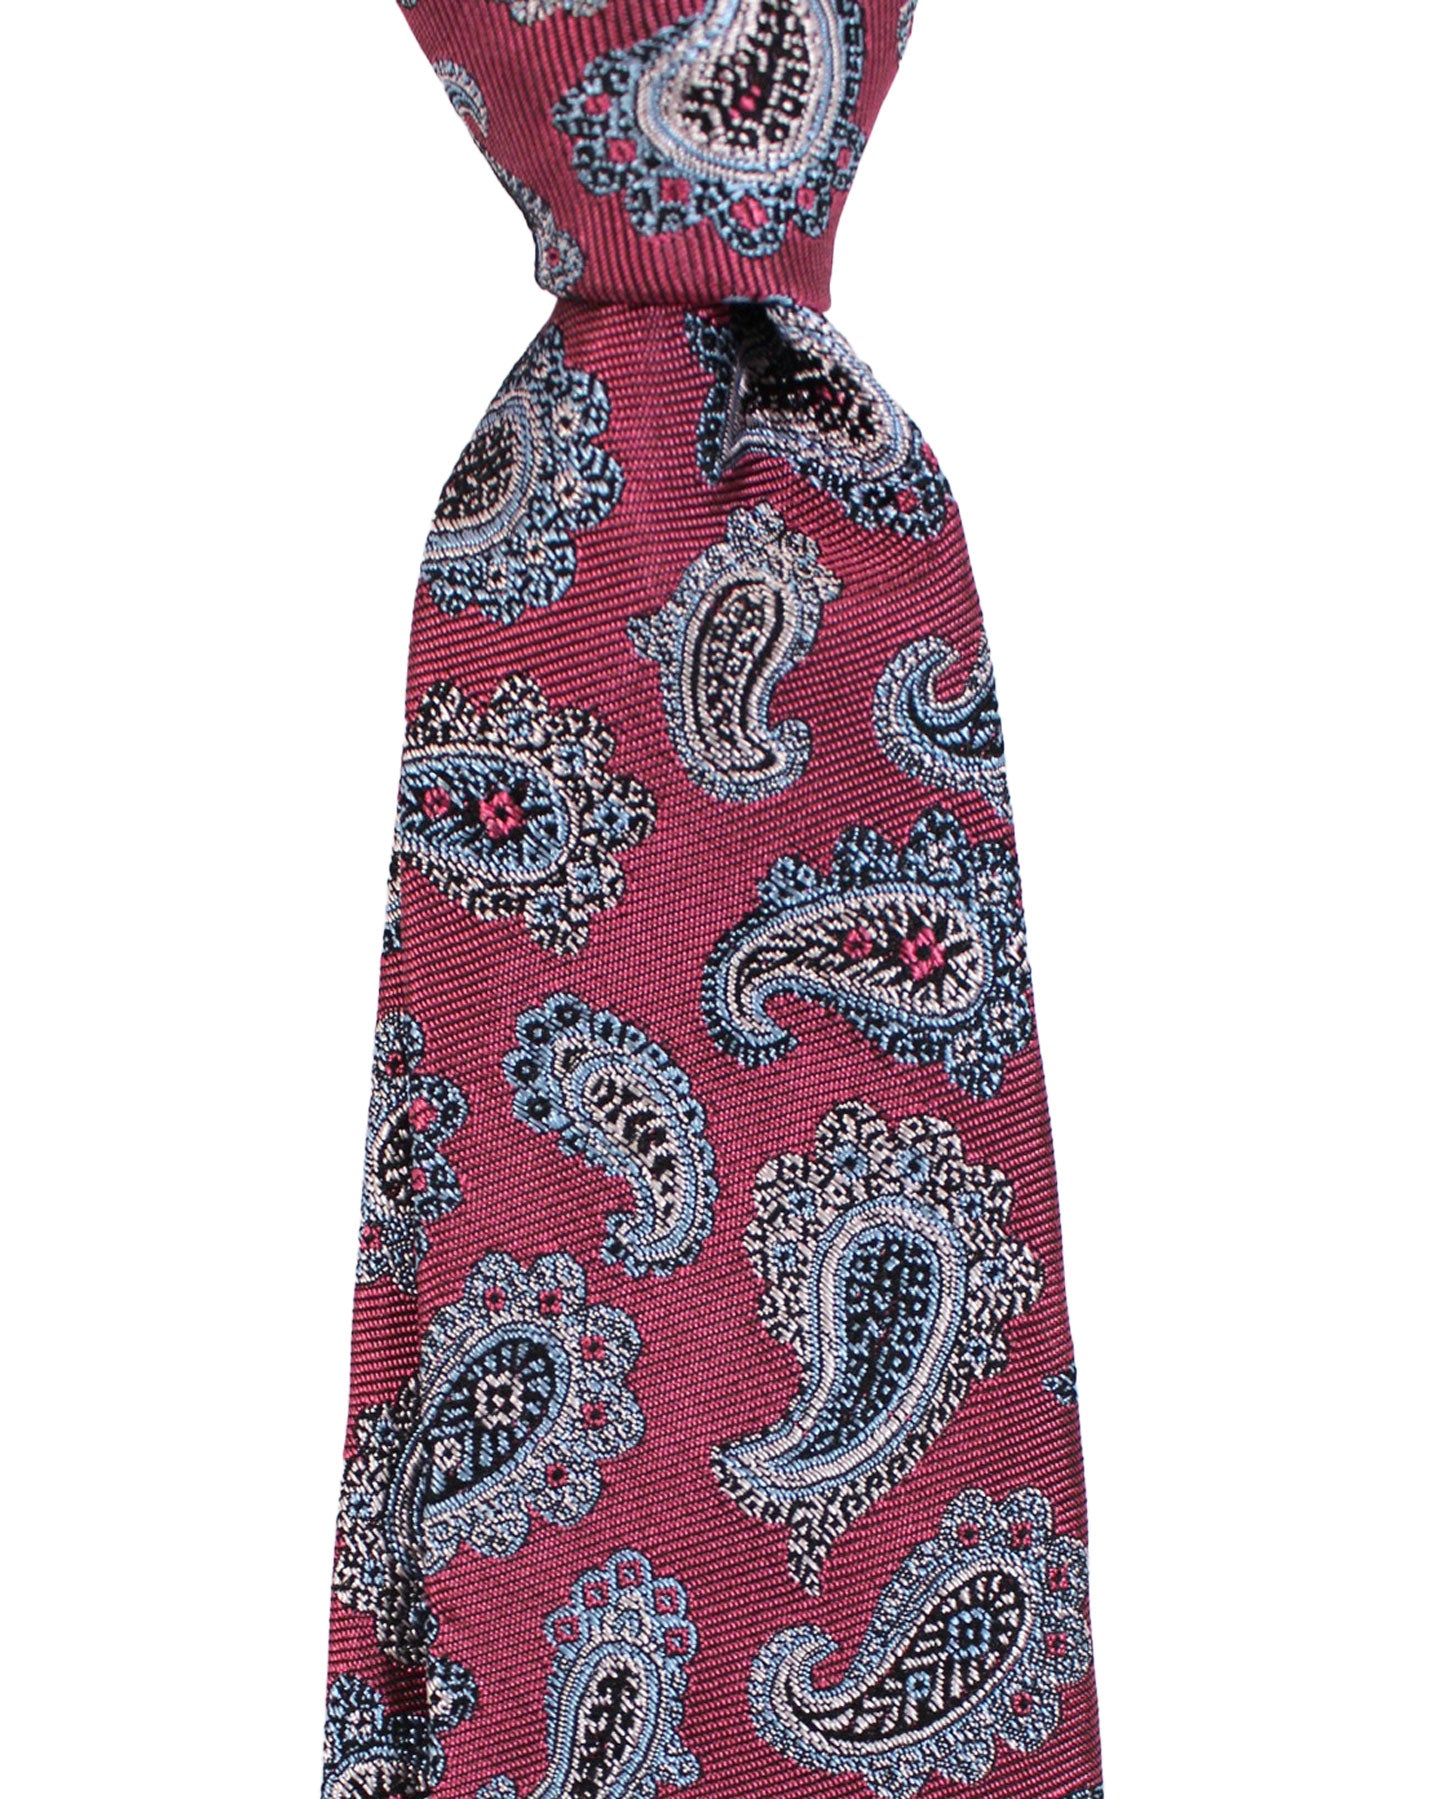 Sartorio Napoli Silk Tie Purple Paisley Design